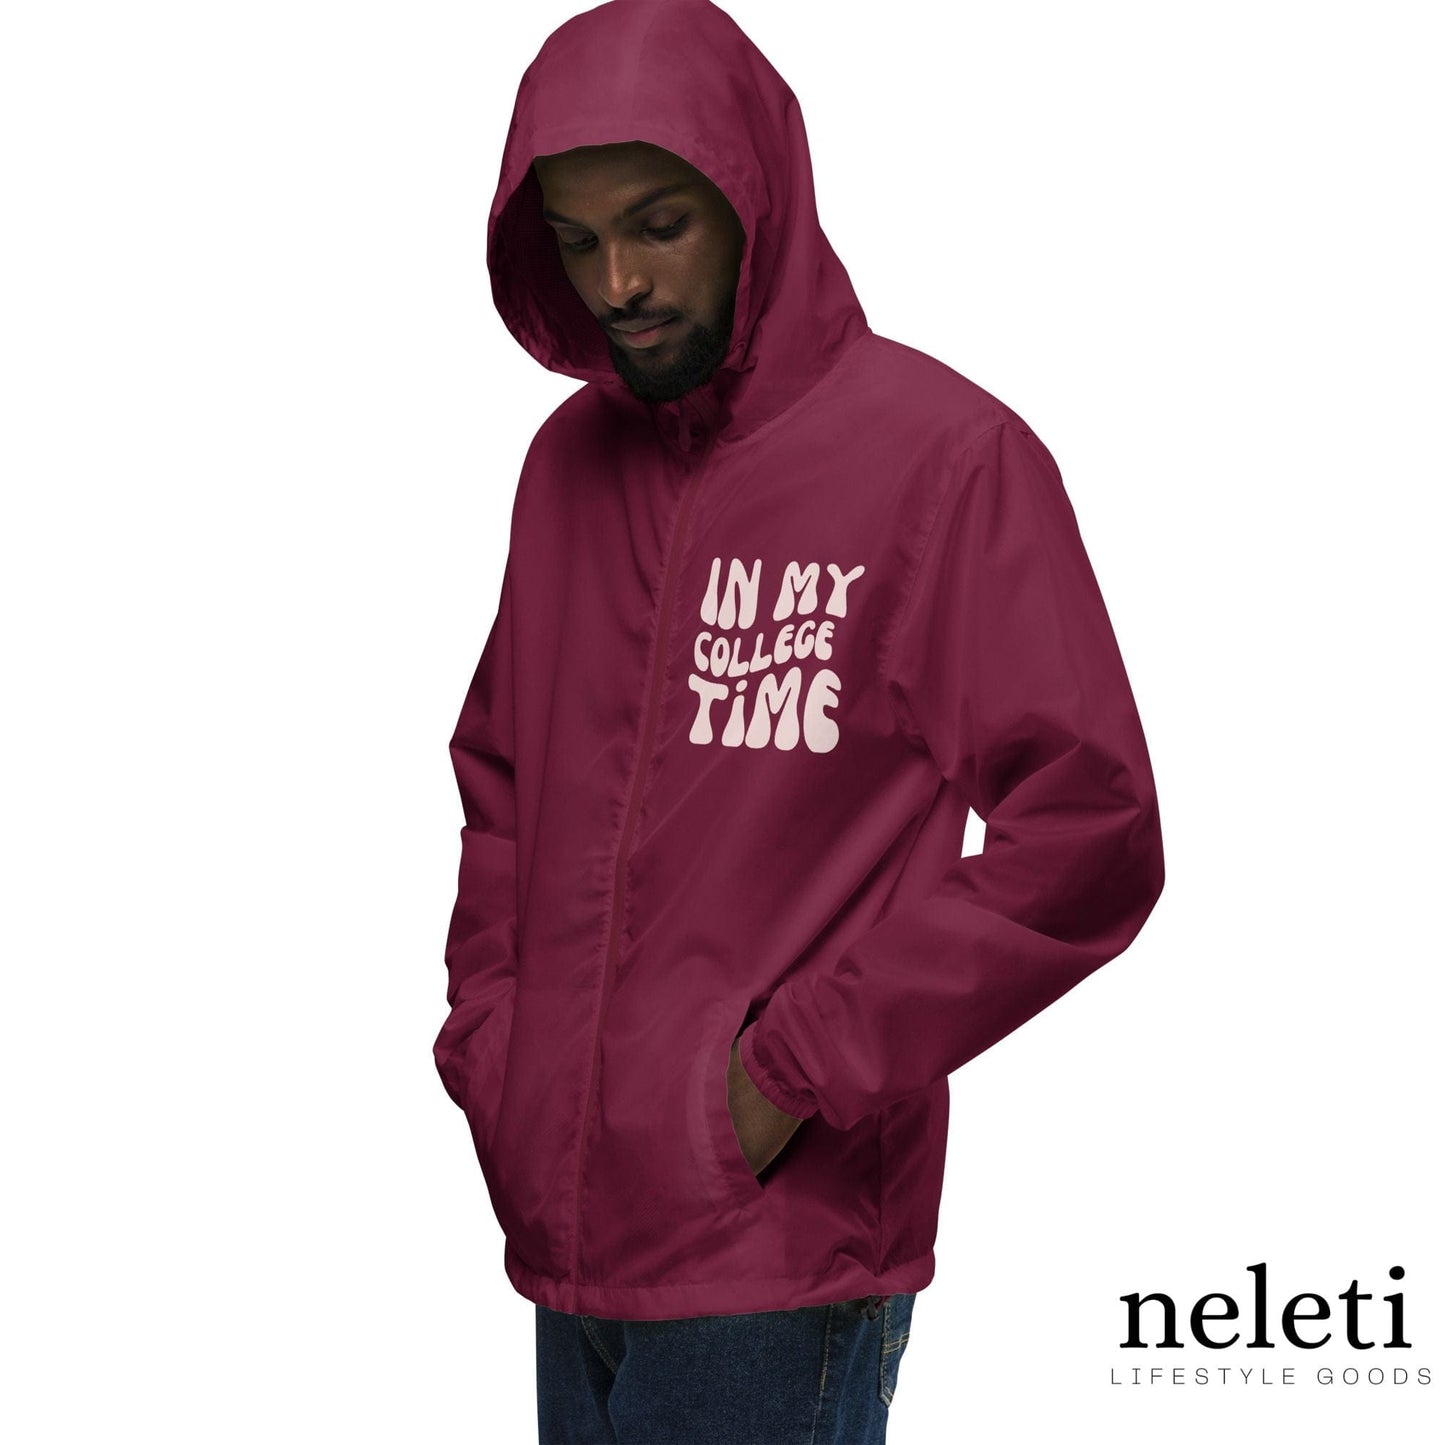 neleti.com-men-windbreaker-in-maroon-color